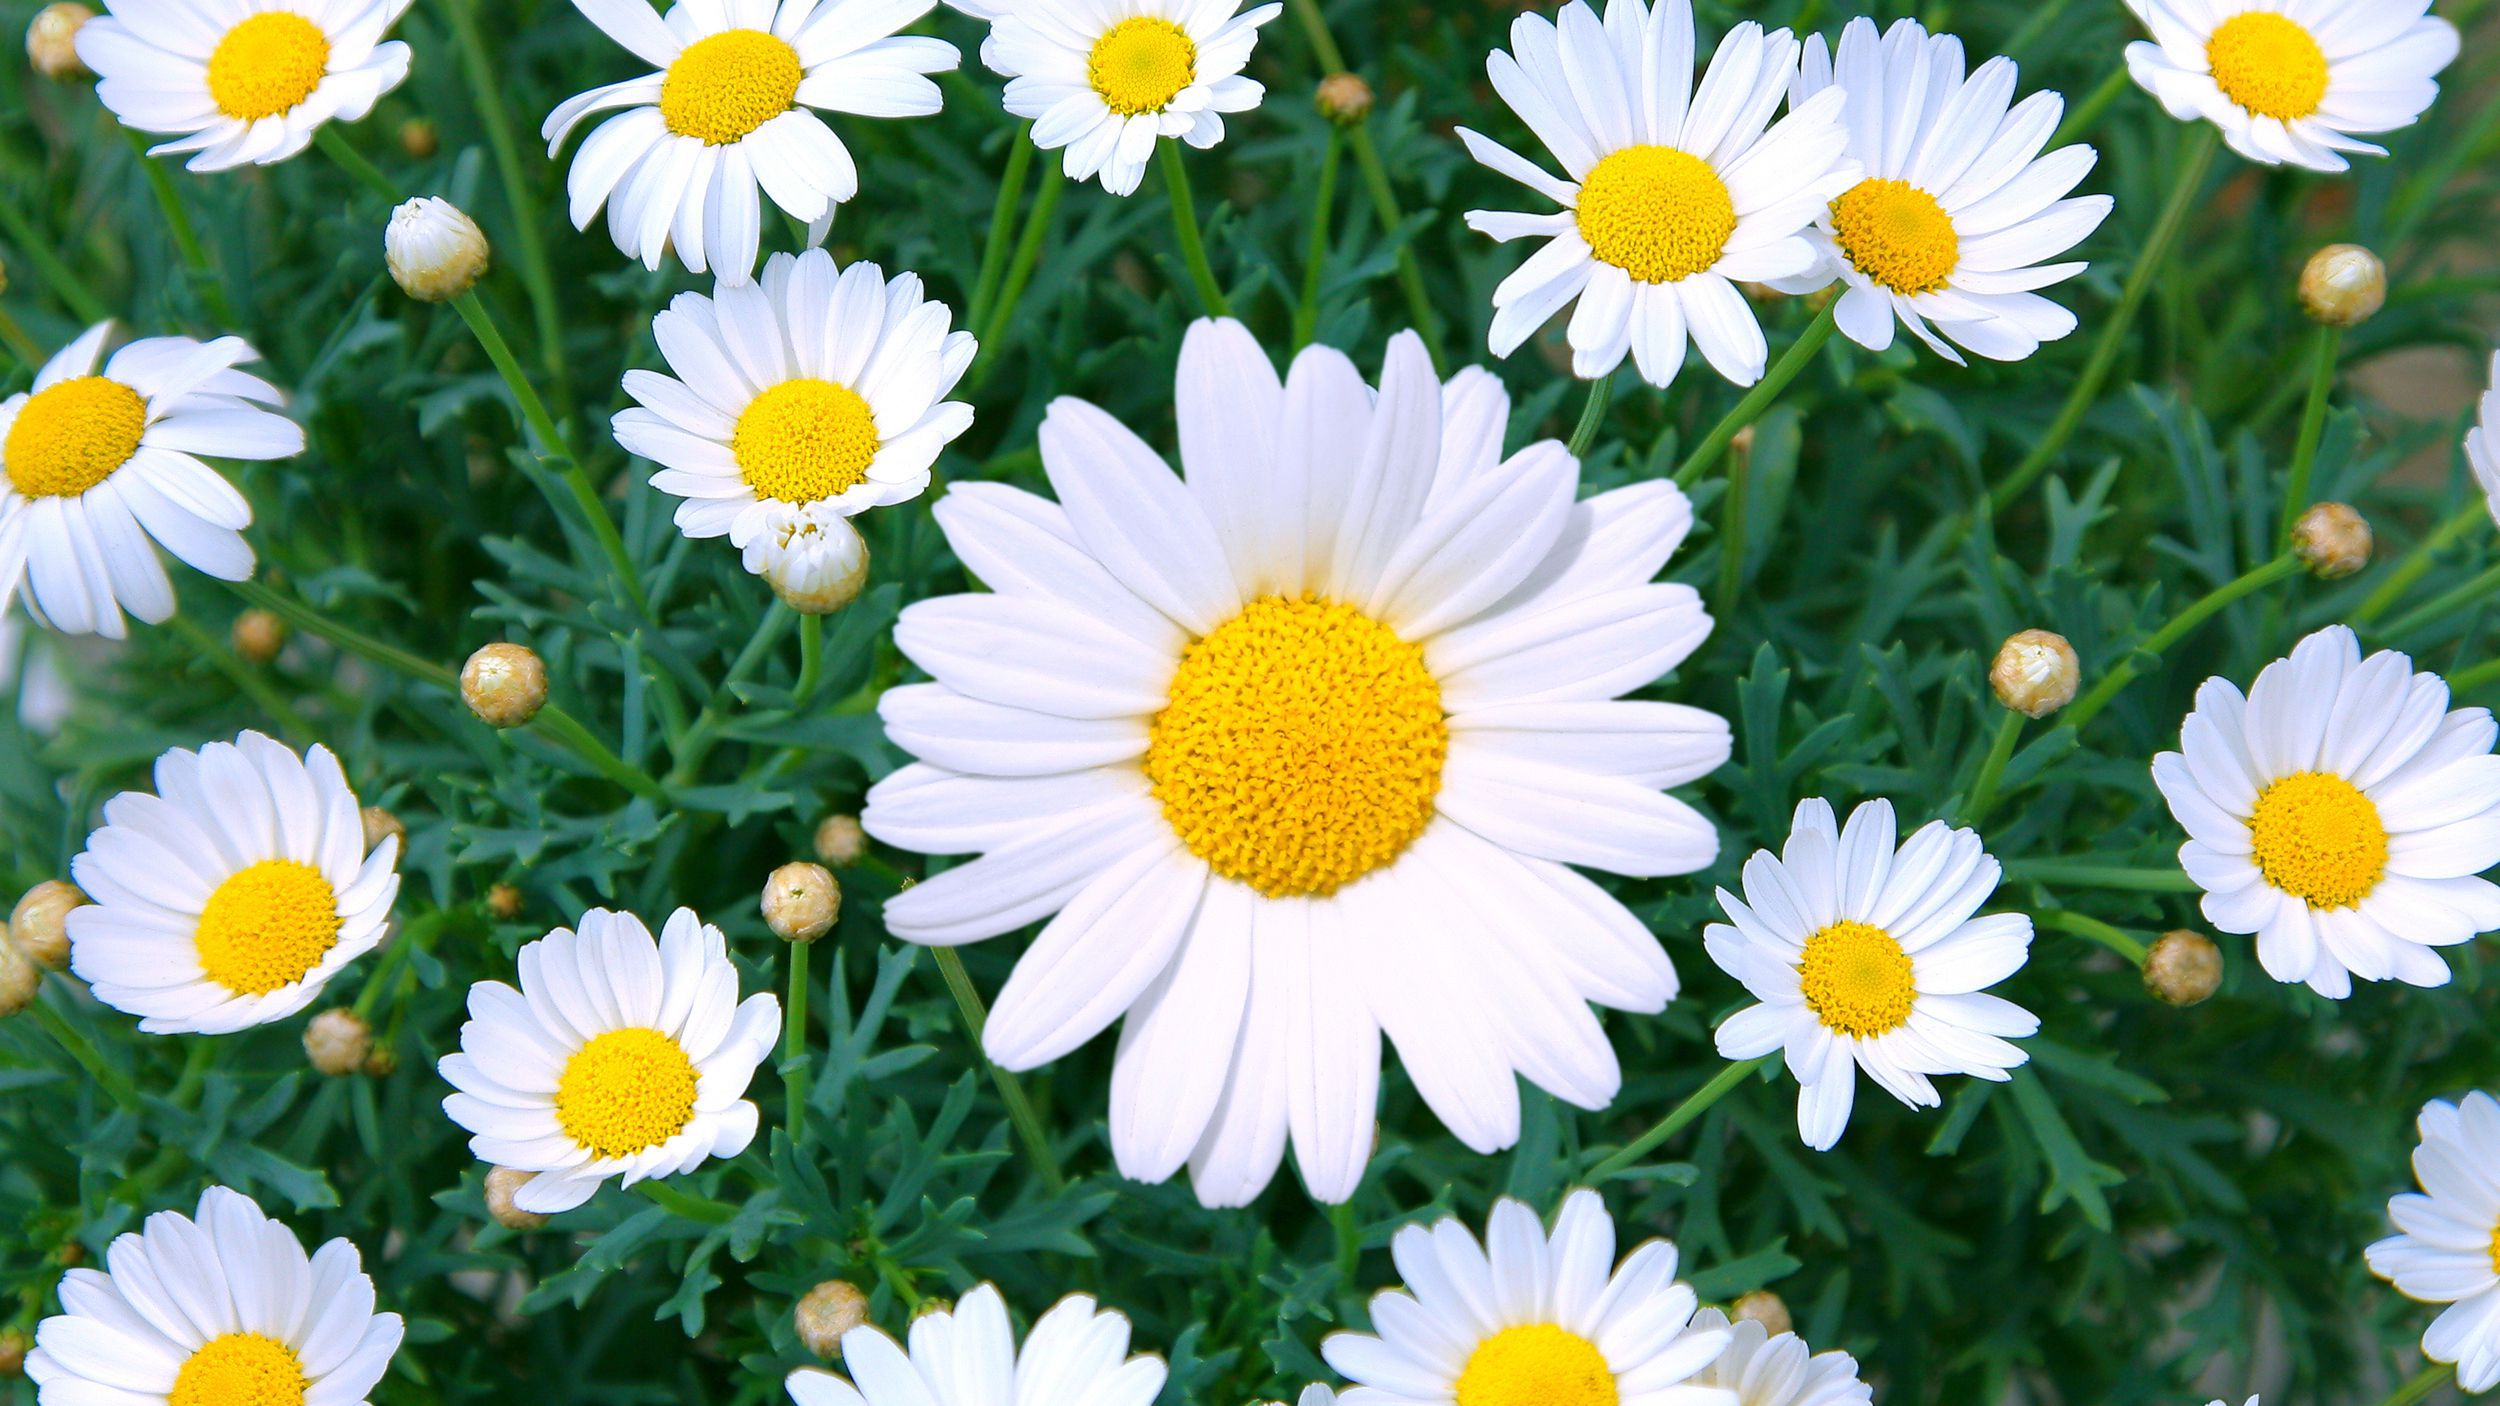 Hoa Xuyến Chi: Niềm đam mê của bạn với các loại hoa đích thực sẽ được thỏa mãn với hình ảnh hoa Xuyến Chi đầy màu sắc và yêu kiều. Hãy chiêm ngưỡng những bông hoa xinh đẹp này trên một nền trắng tinh khiết và phát hiện ra sức hấp dẫn của chúng.